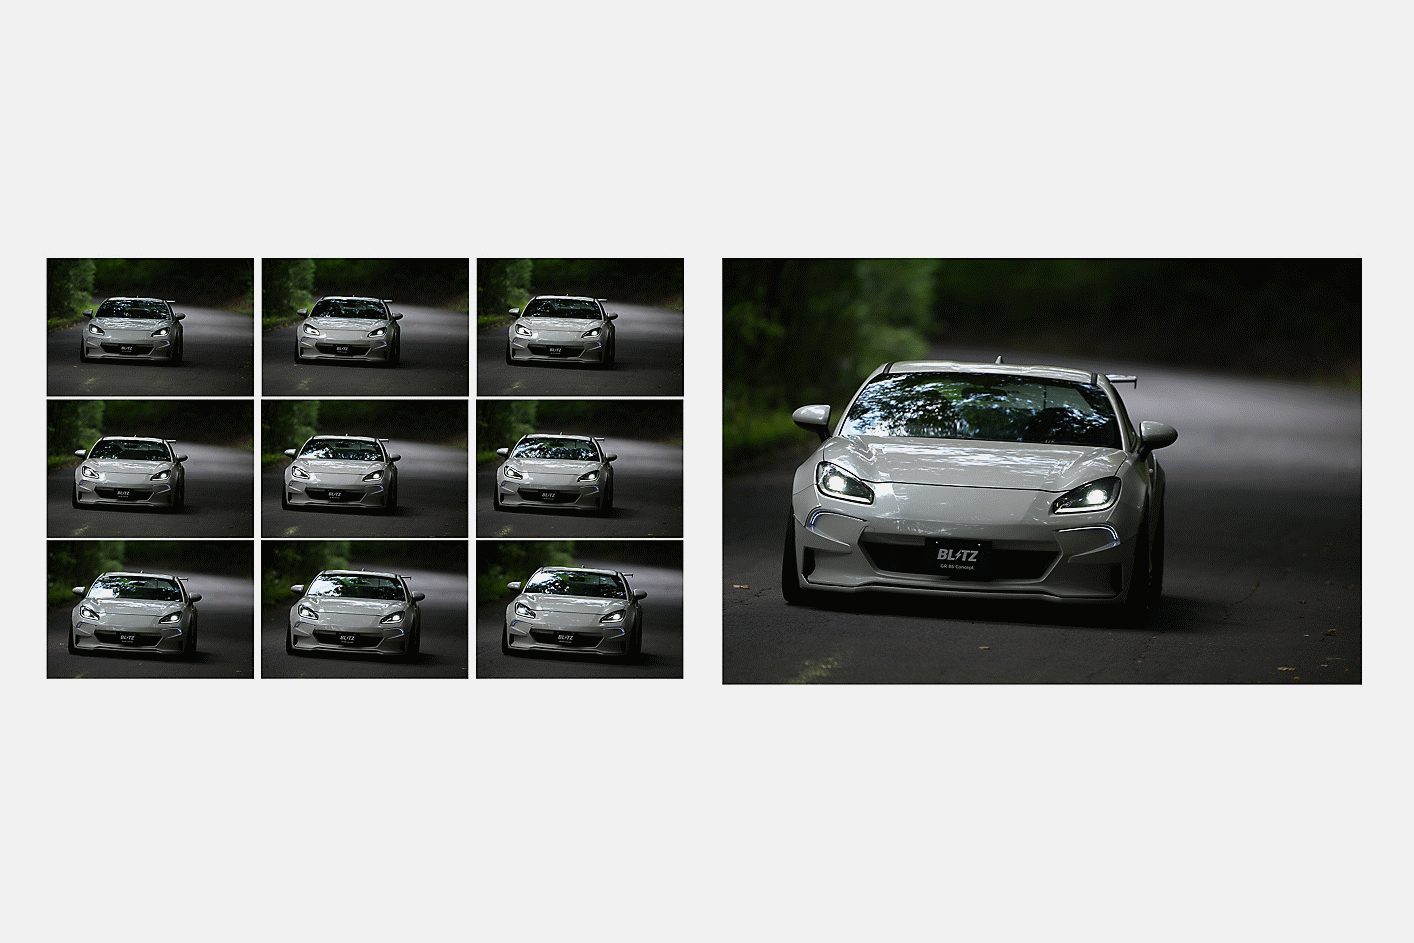 Slike avtomobila so neprekinjeno posnete pri 10 sličicah/s z vklopljenim sledenjem AF/AE